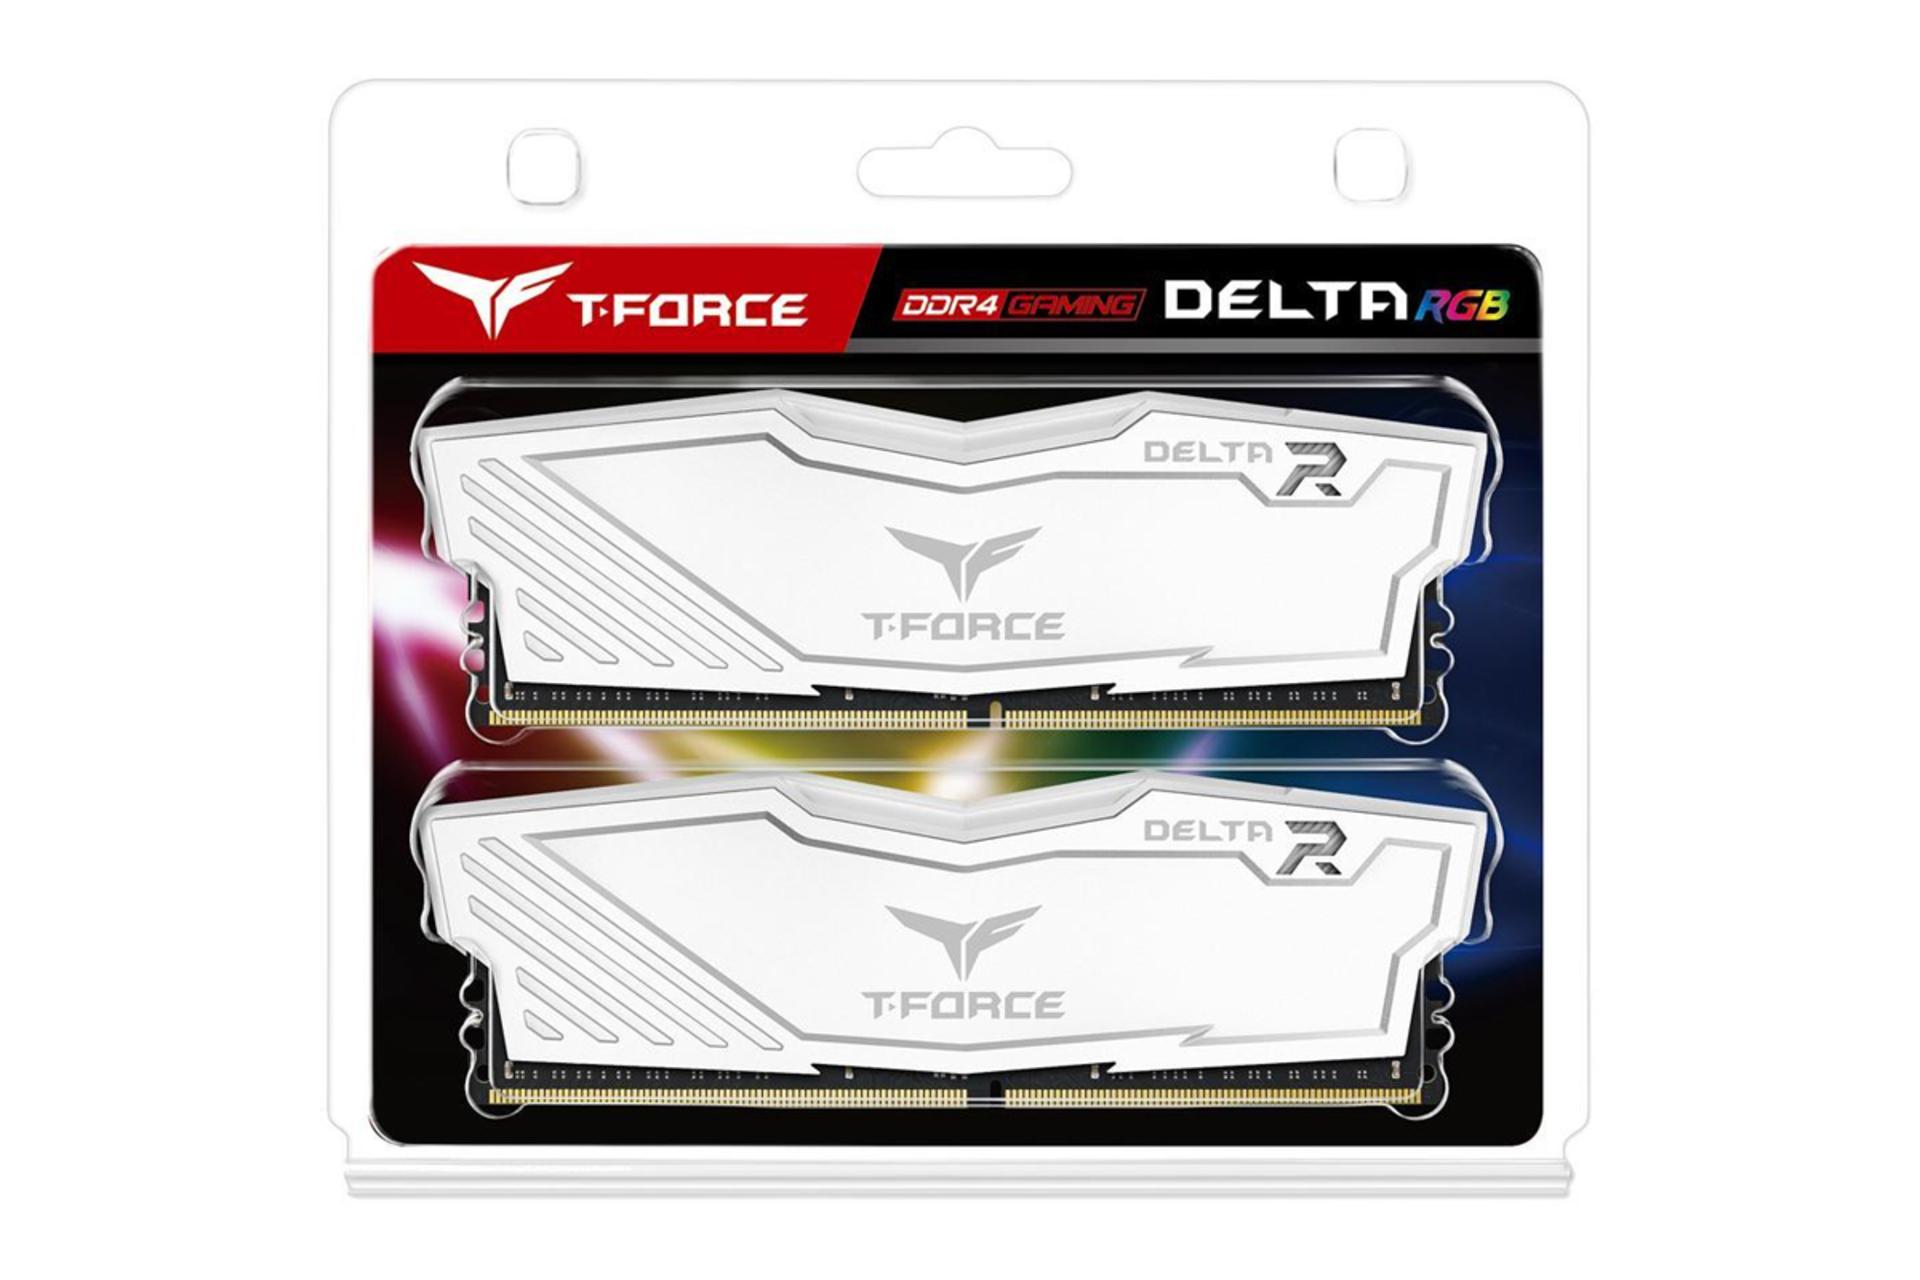 جعبه رم تیم گروپ T-FORCE DELTA RGB ظرفیت 16 گیگابایت (2x8) از نوع DDR4-3000